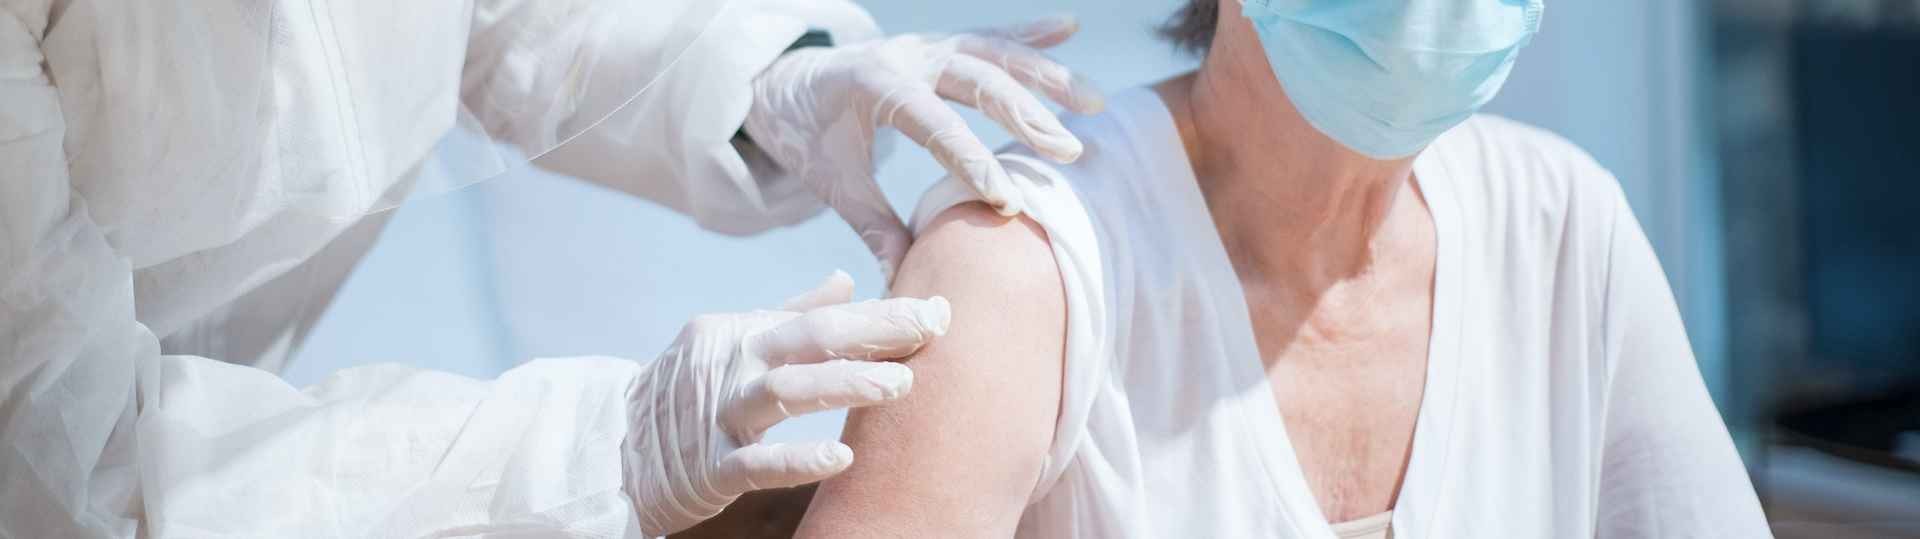 Arranca la campaña de vacunación contra la Covid